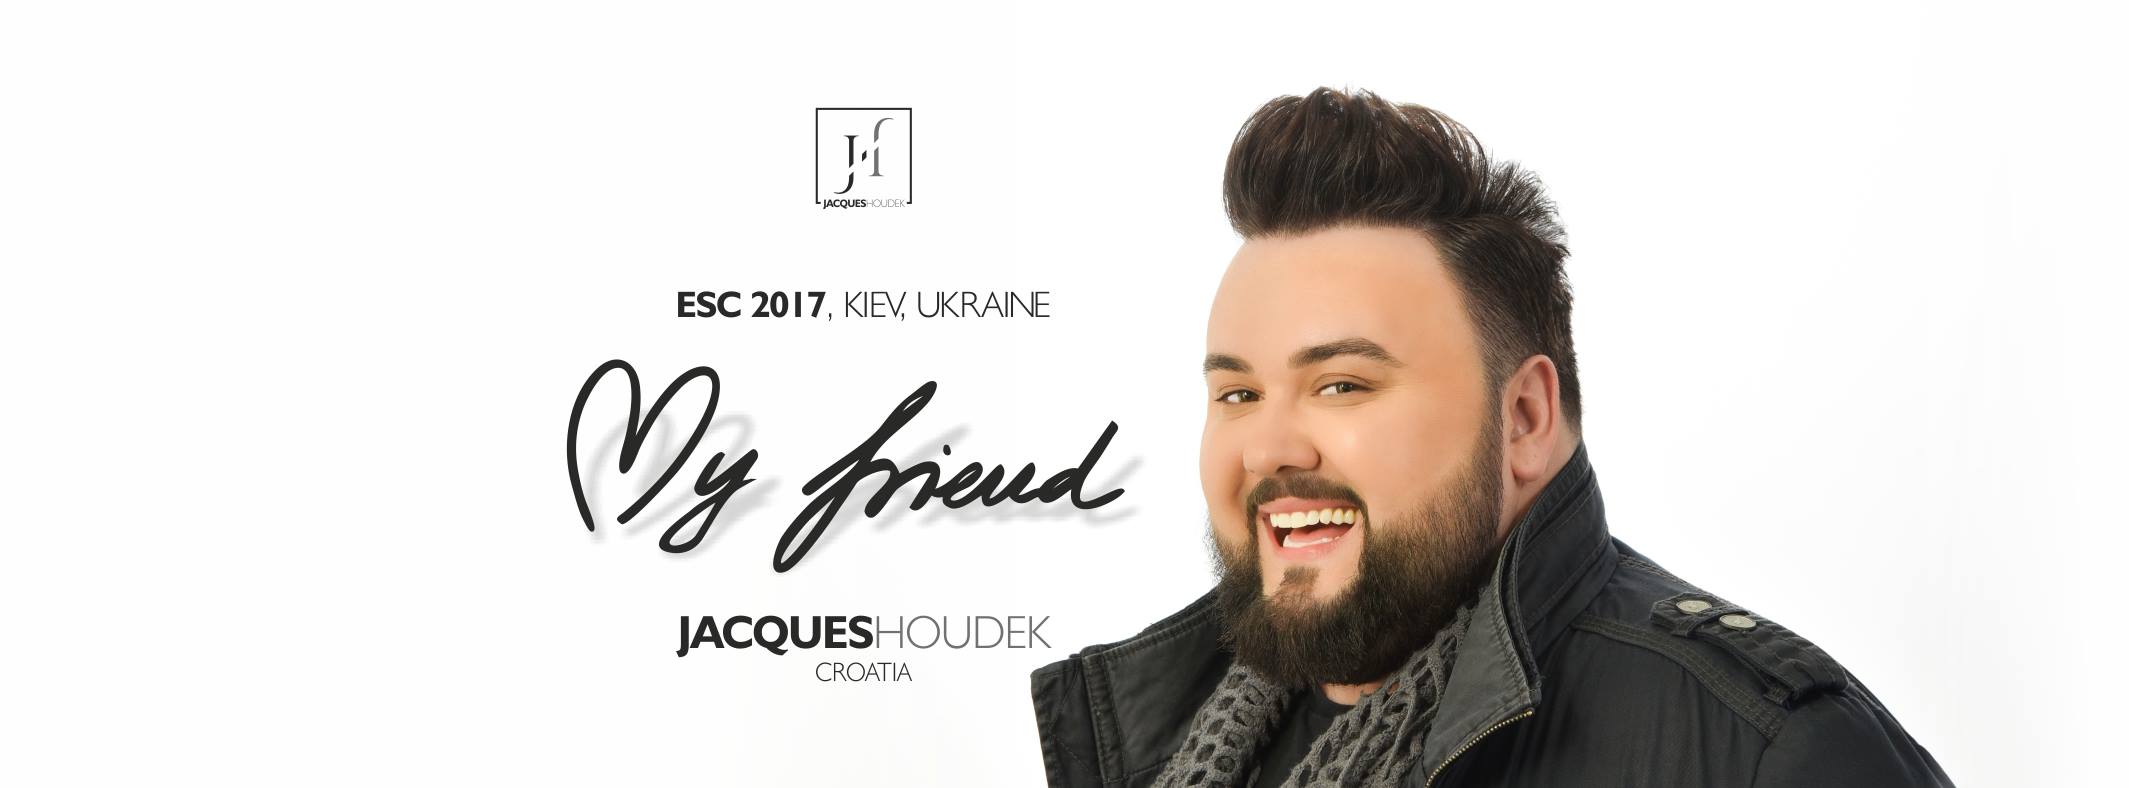 Jacques izborio finale, na Eurosongu pala i prva prosidba Na drugoj polufinalnoj večeri 62. Eurosonga, koji se ove godine pod motom 'Slavimo različitosti' održava u Kijevu, predstavnik Hrvatske Jacques Houdek je u četvrtak uspio izboriti prolazak u finale koje će se održati u subotu